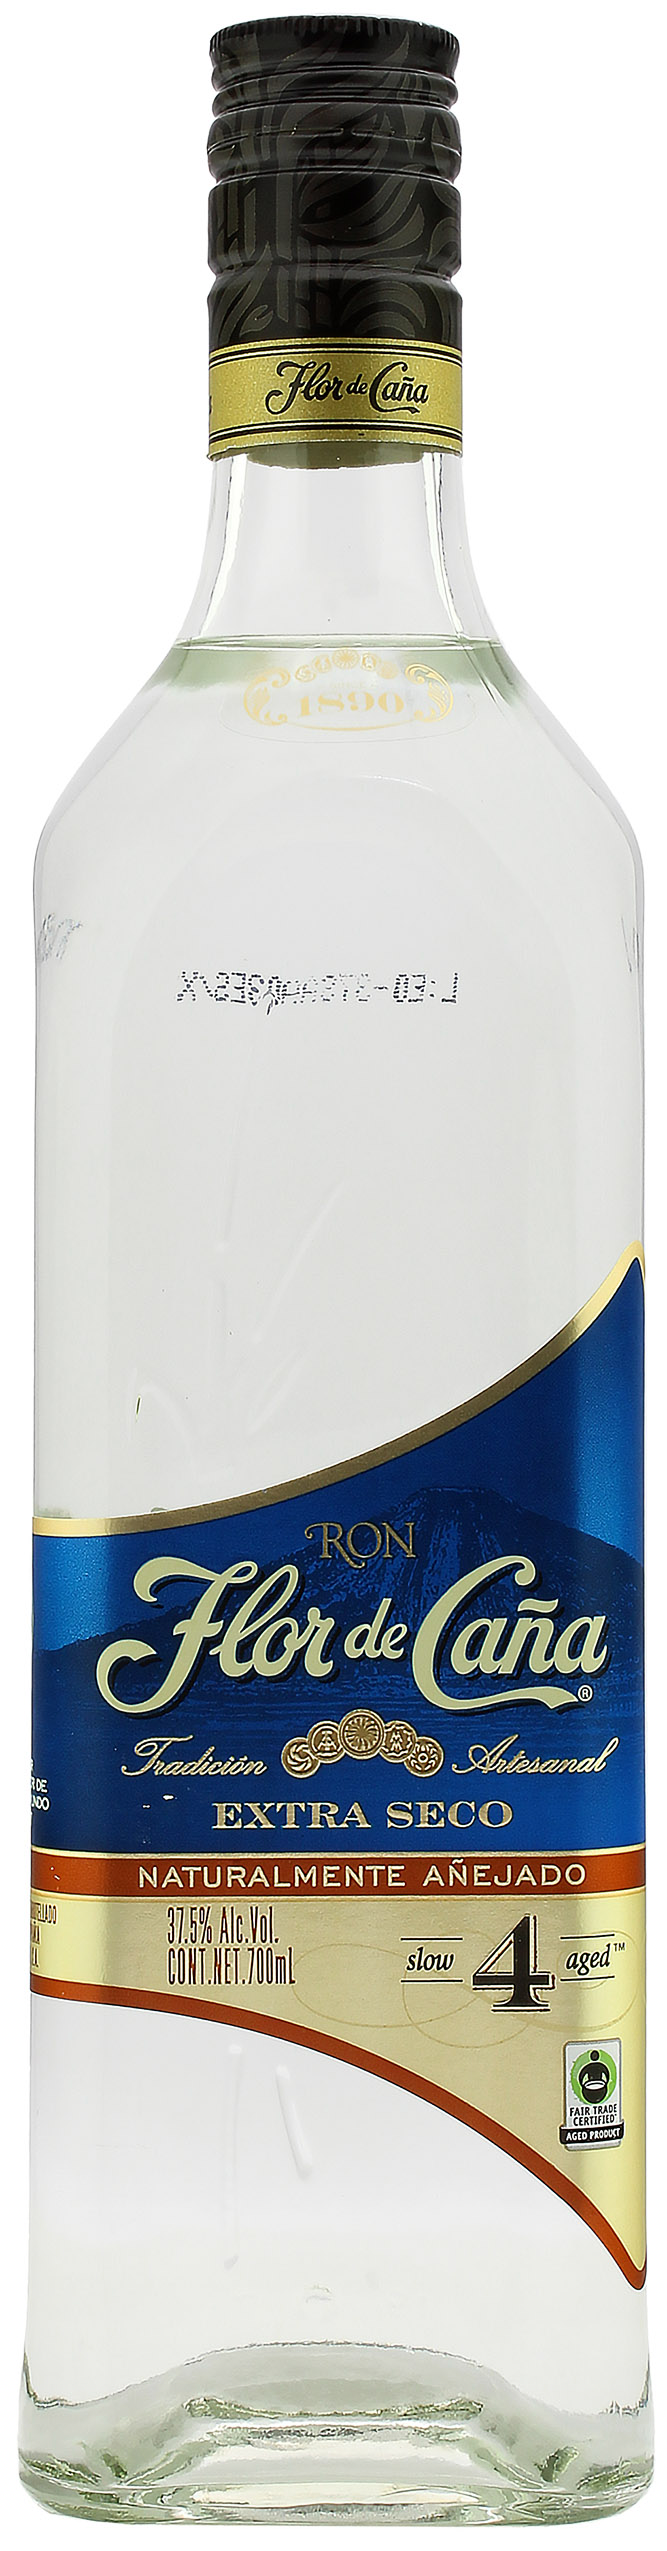 Flor de Cana 4 Jahre Extra Seco Rum 37.5% 0,7l